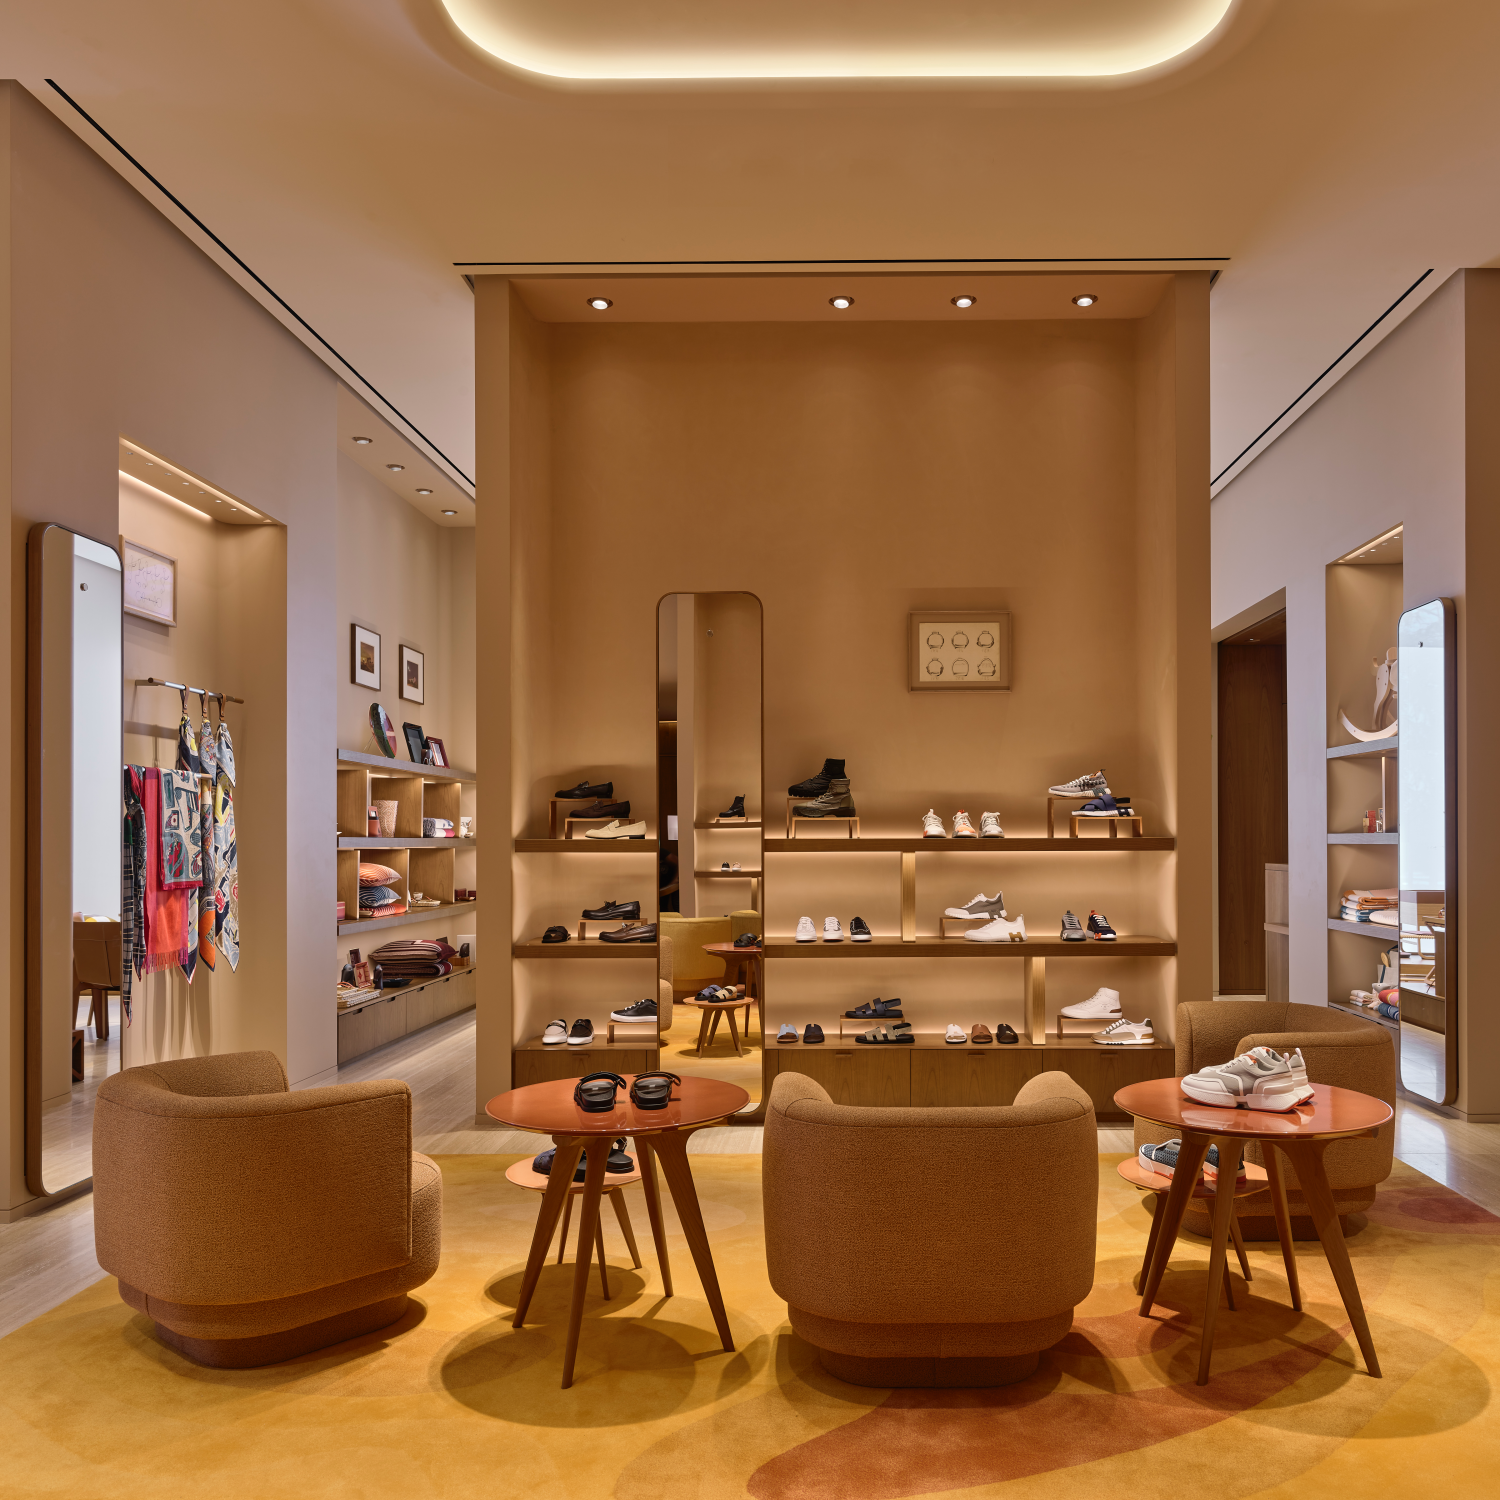 Los Angeles: Hermès store opening